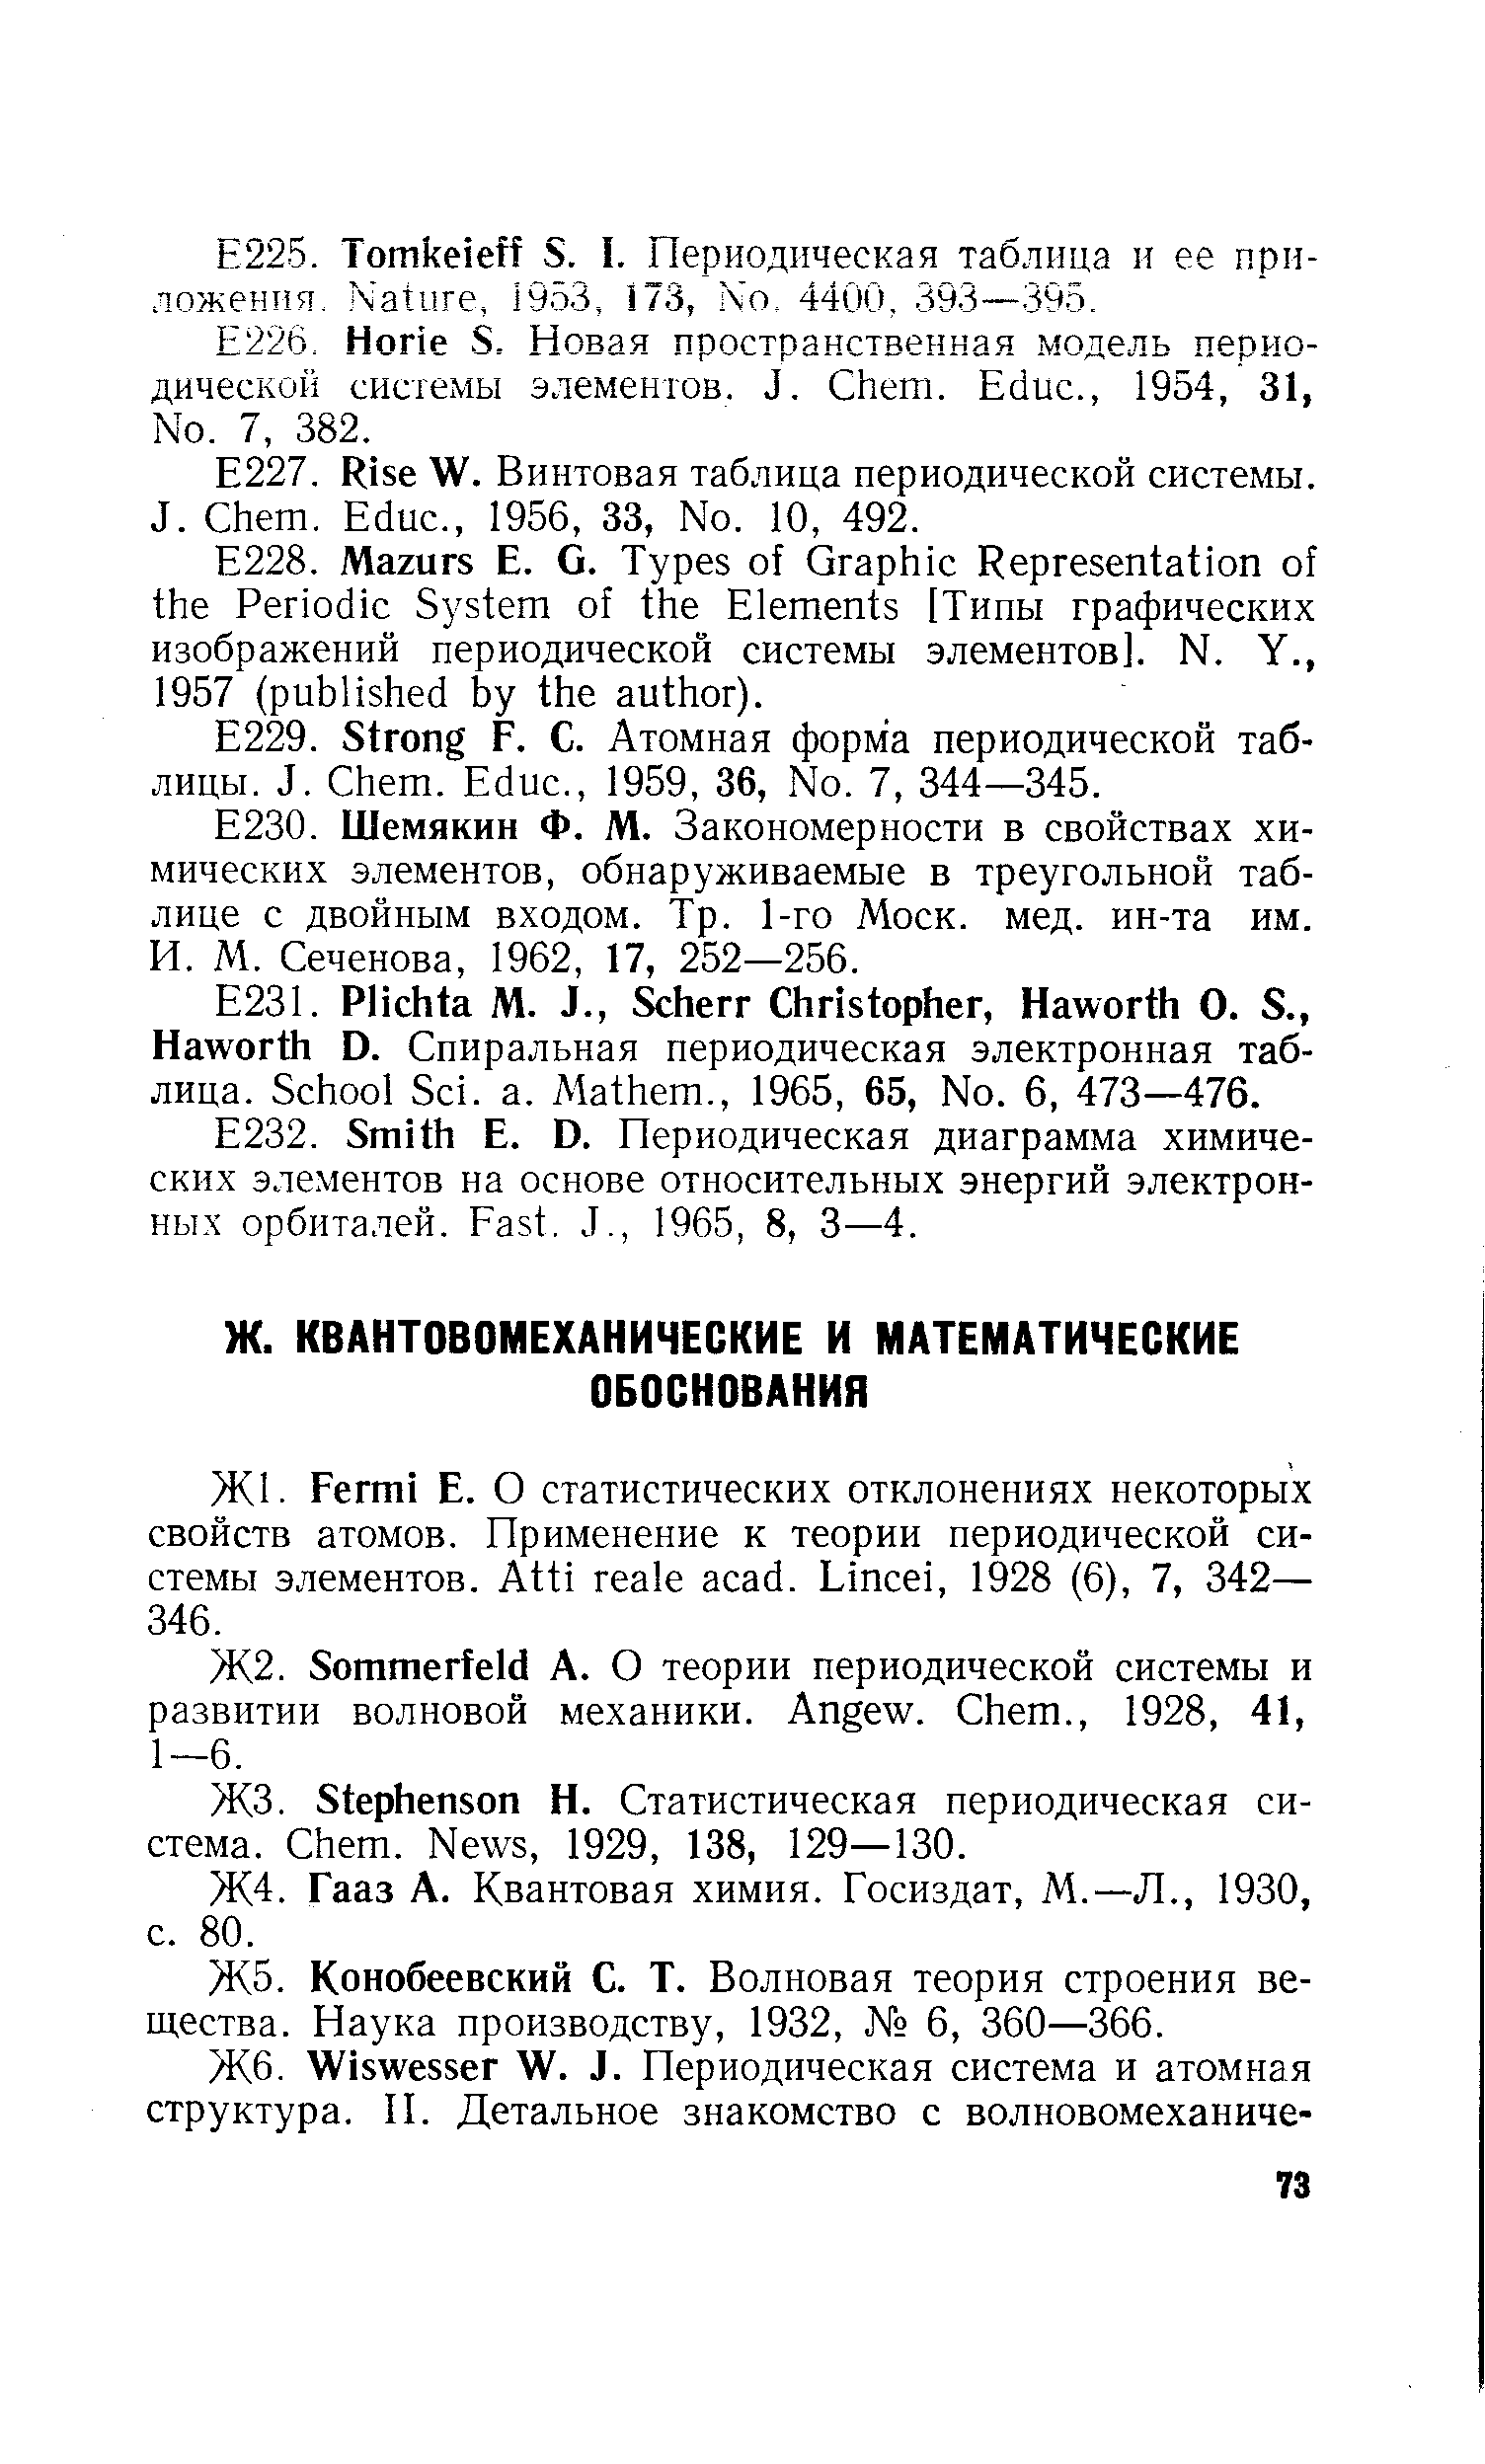 Гааз А. Квантовая химия. Госиздат, М.—Л., 1930, с. 80.